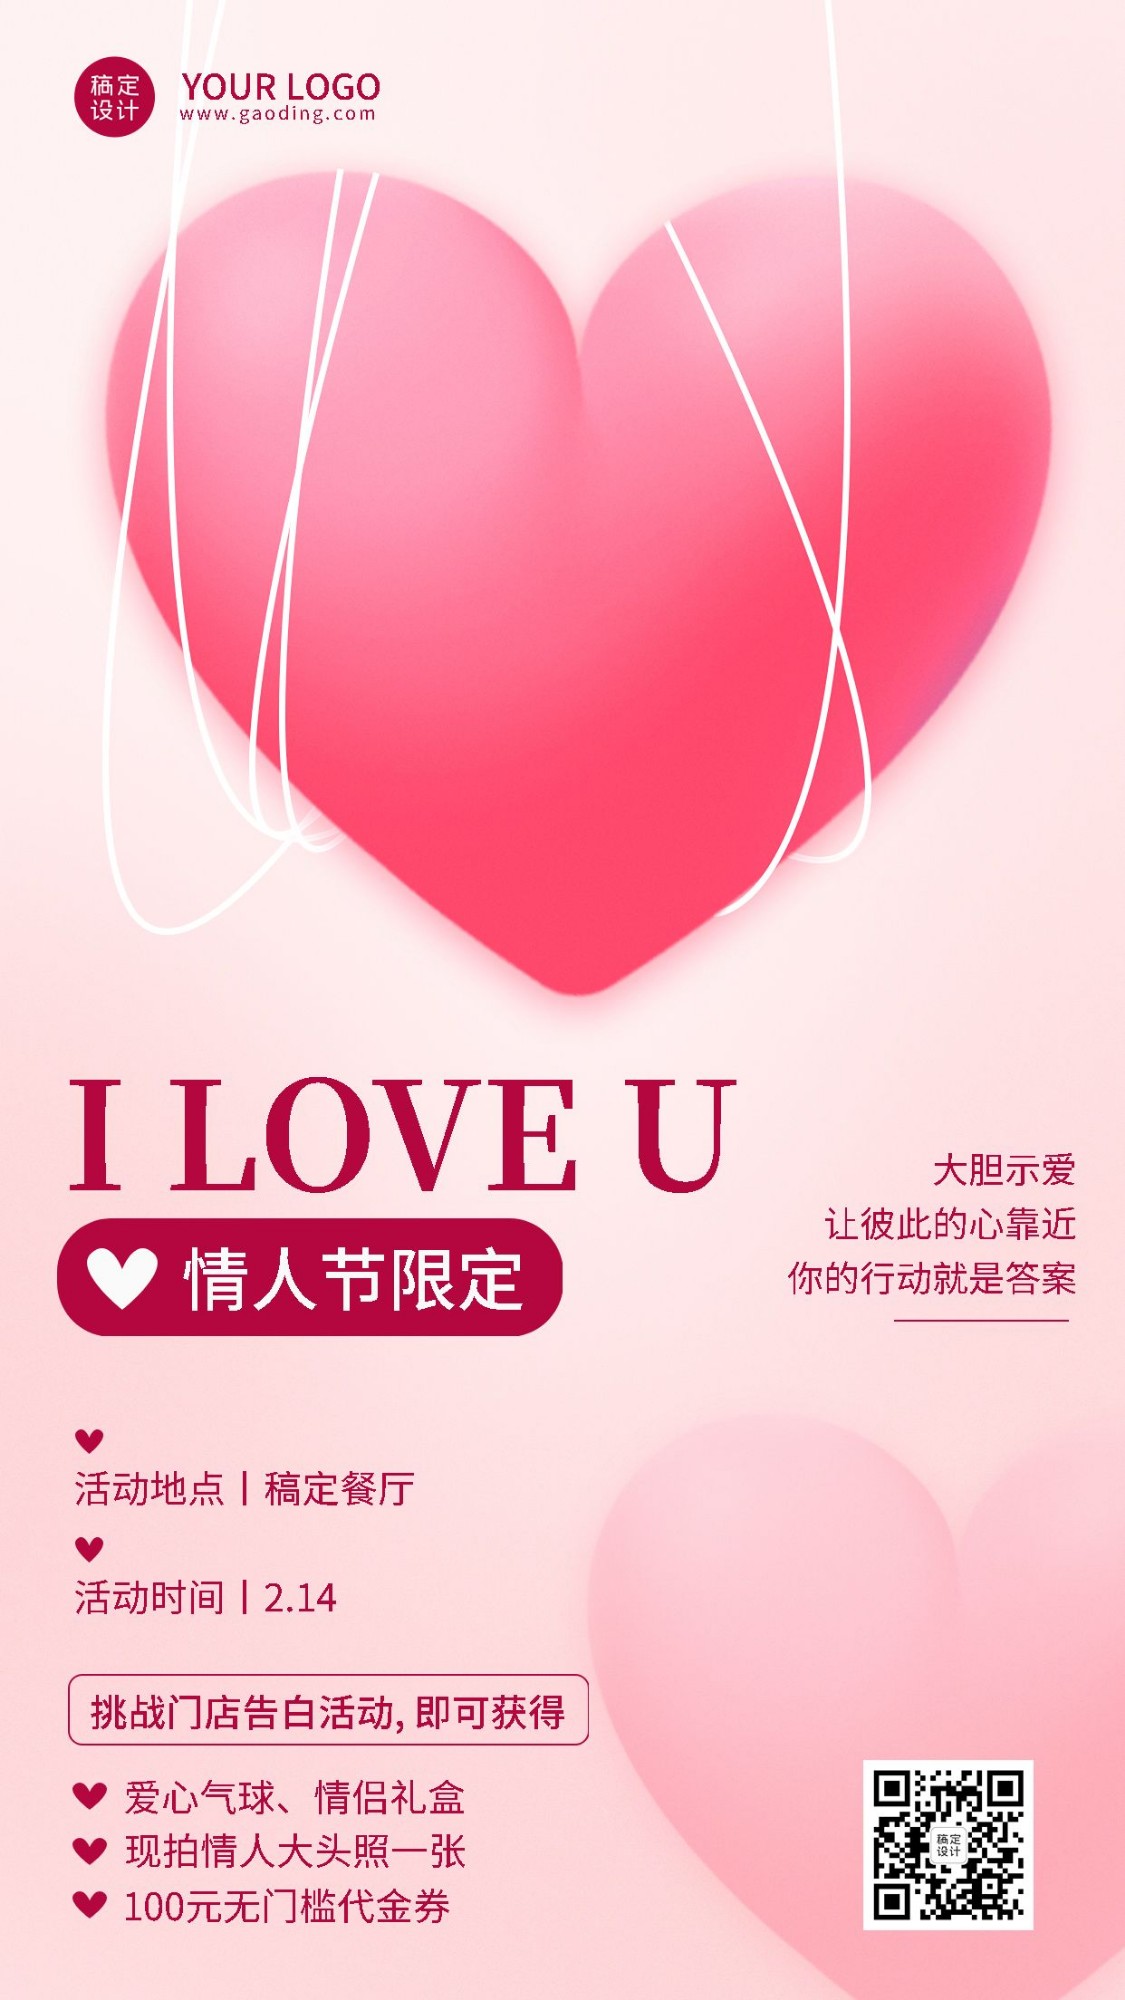 情人节节日活动手机海报